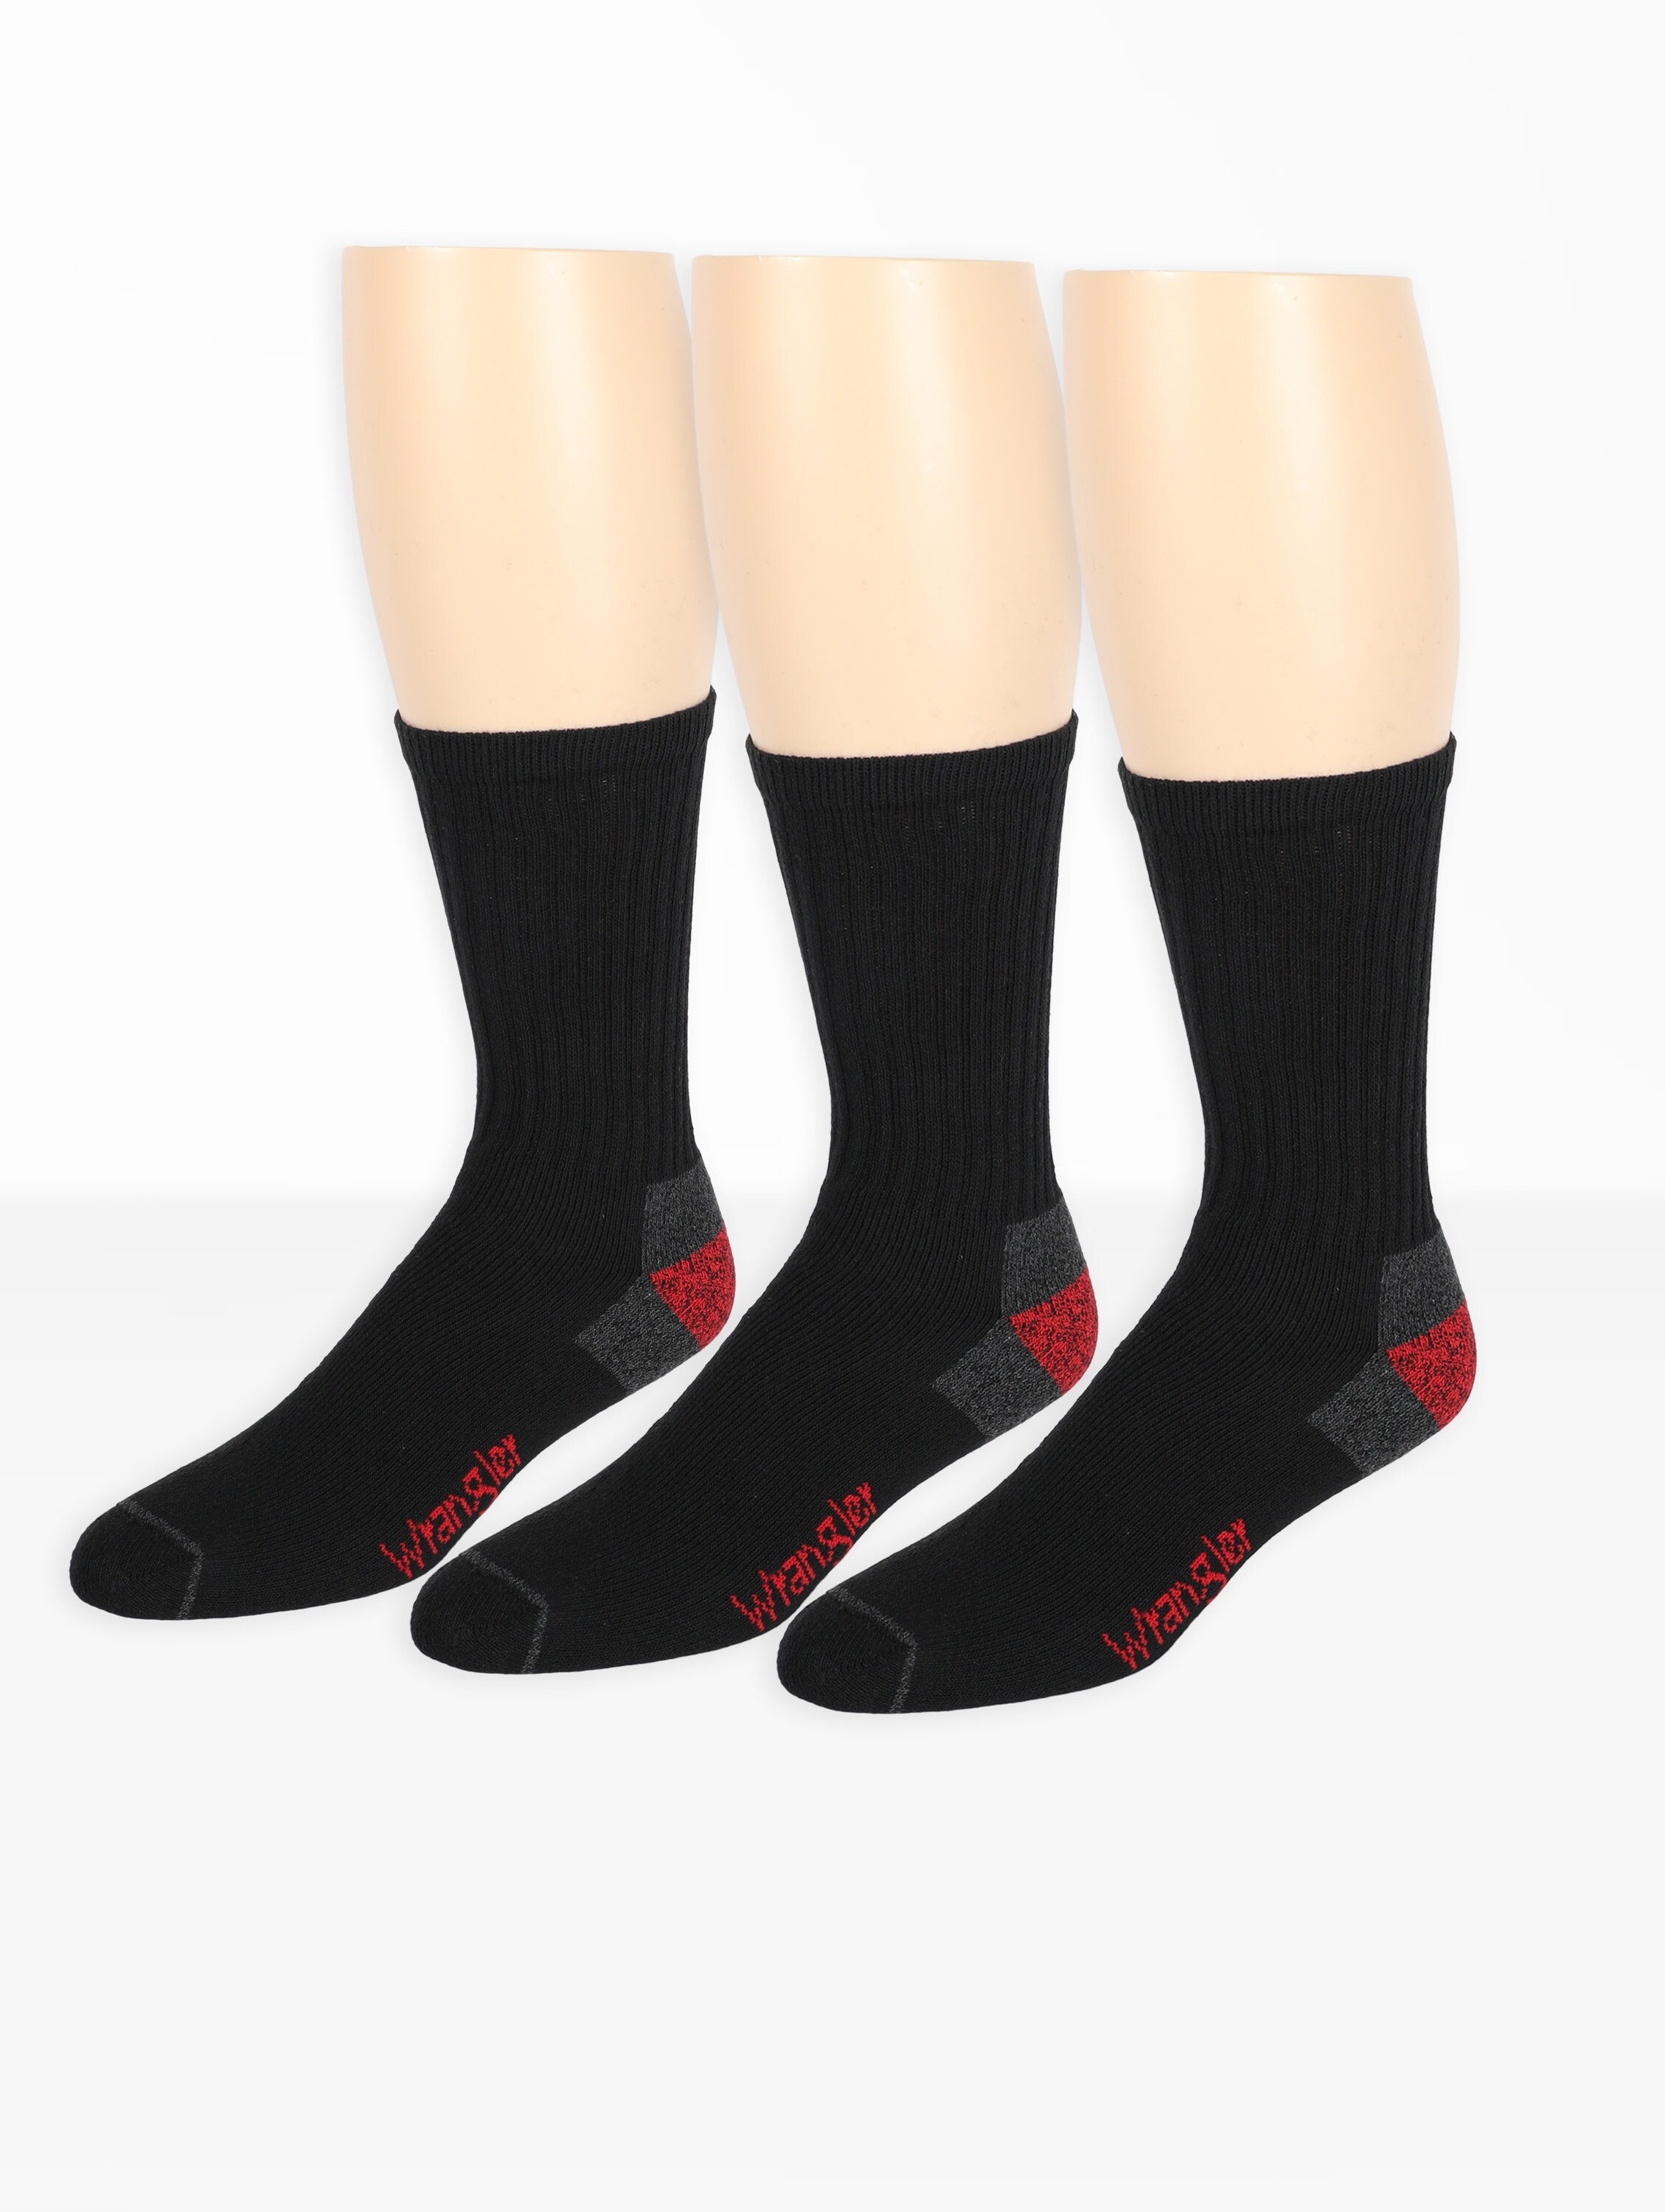 Wrangler Wrangler Men's Cotton Blend Mid Weight Socks 6-12 Black at ...